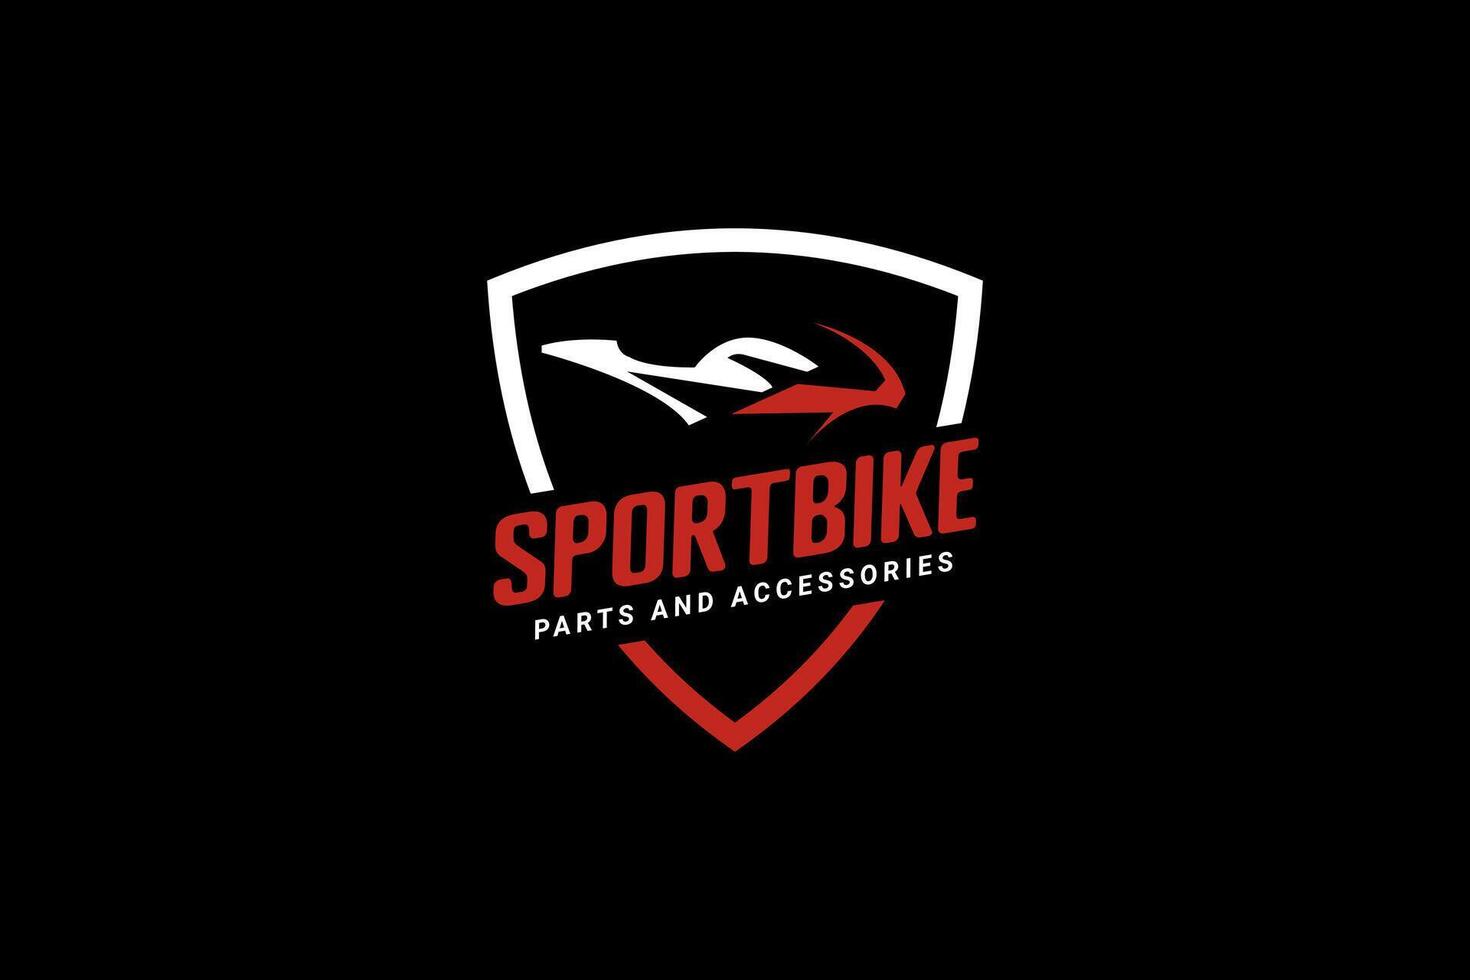 vélo de sport logo vecteur icône illustration